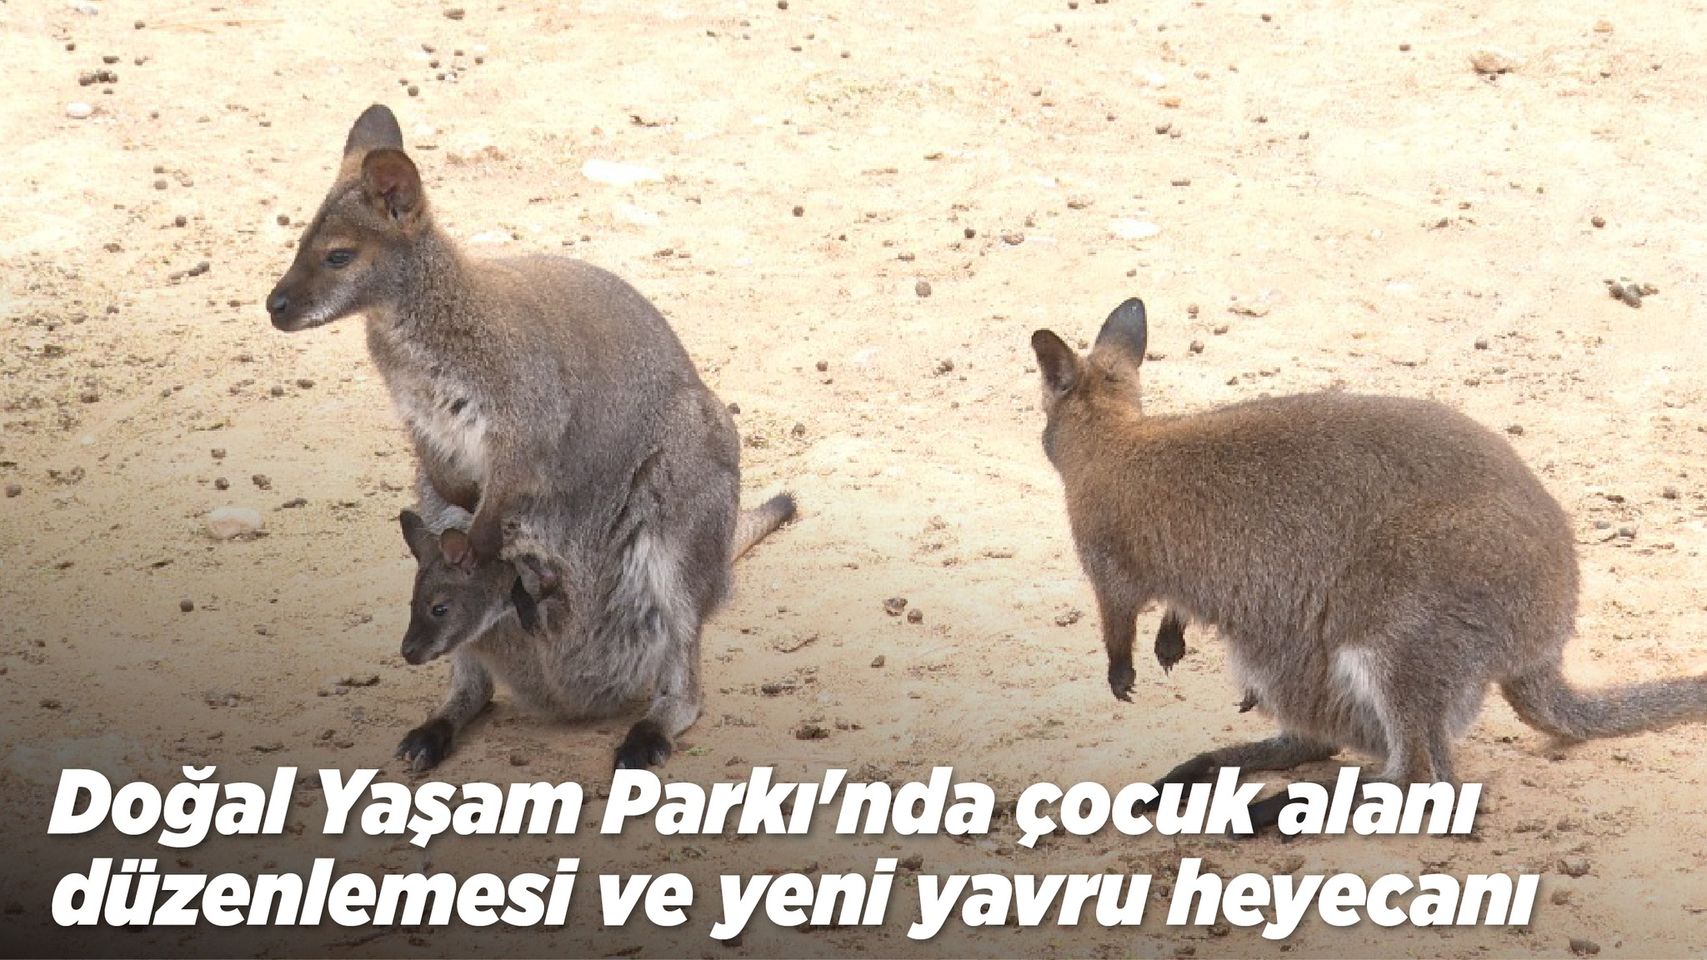 Antalya'da Bulunan Doğal Yaşam Parkı, Bahar Mevsimiyle Eşsiz Hayvan Etkileşimi Sundu